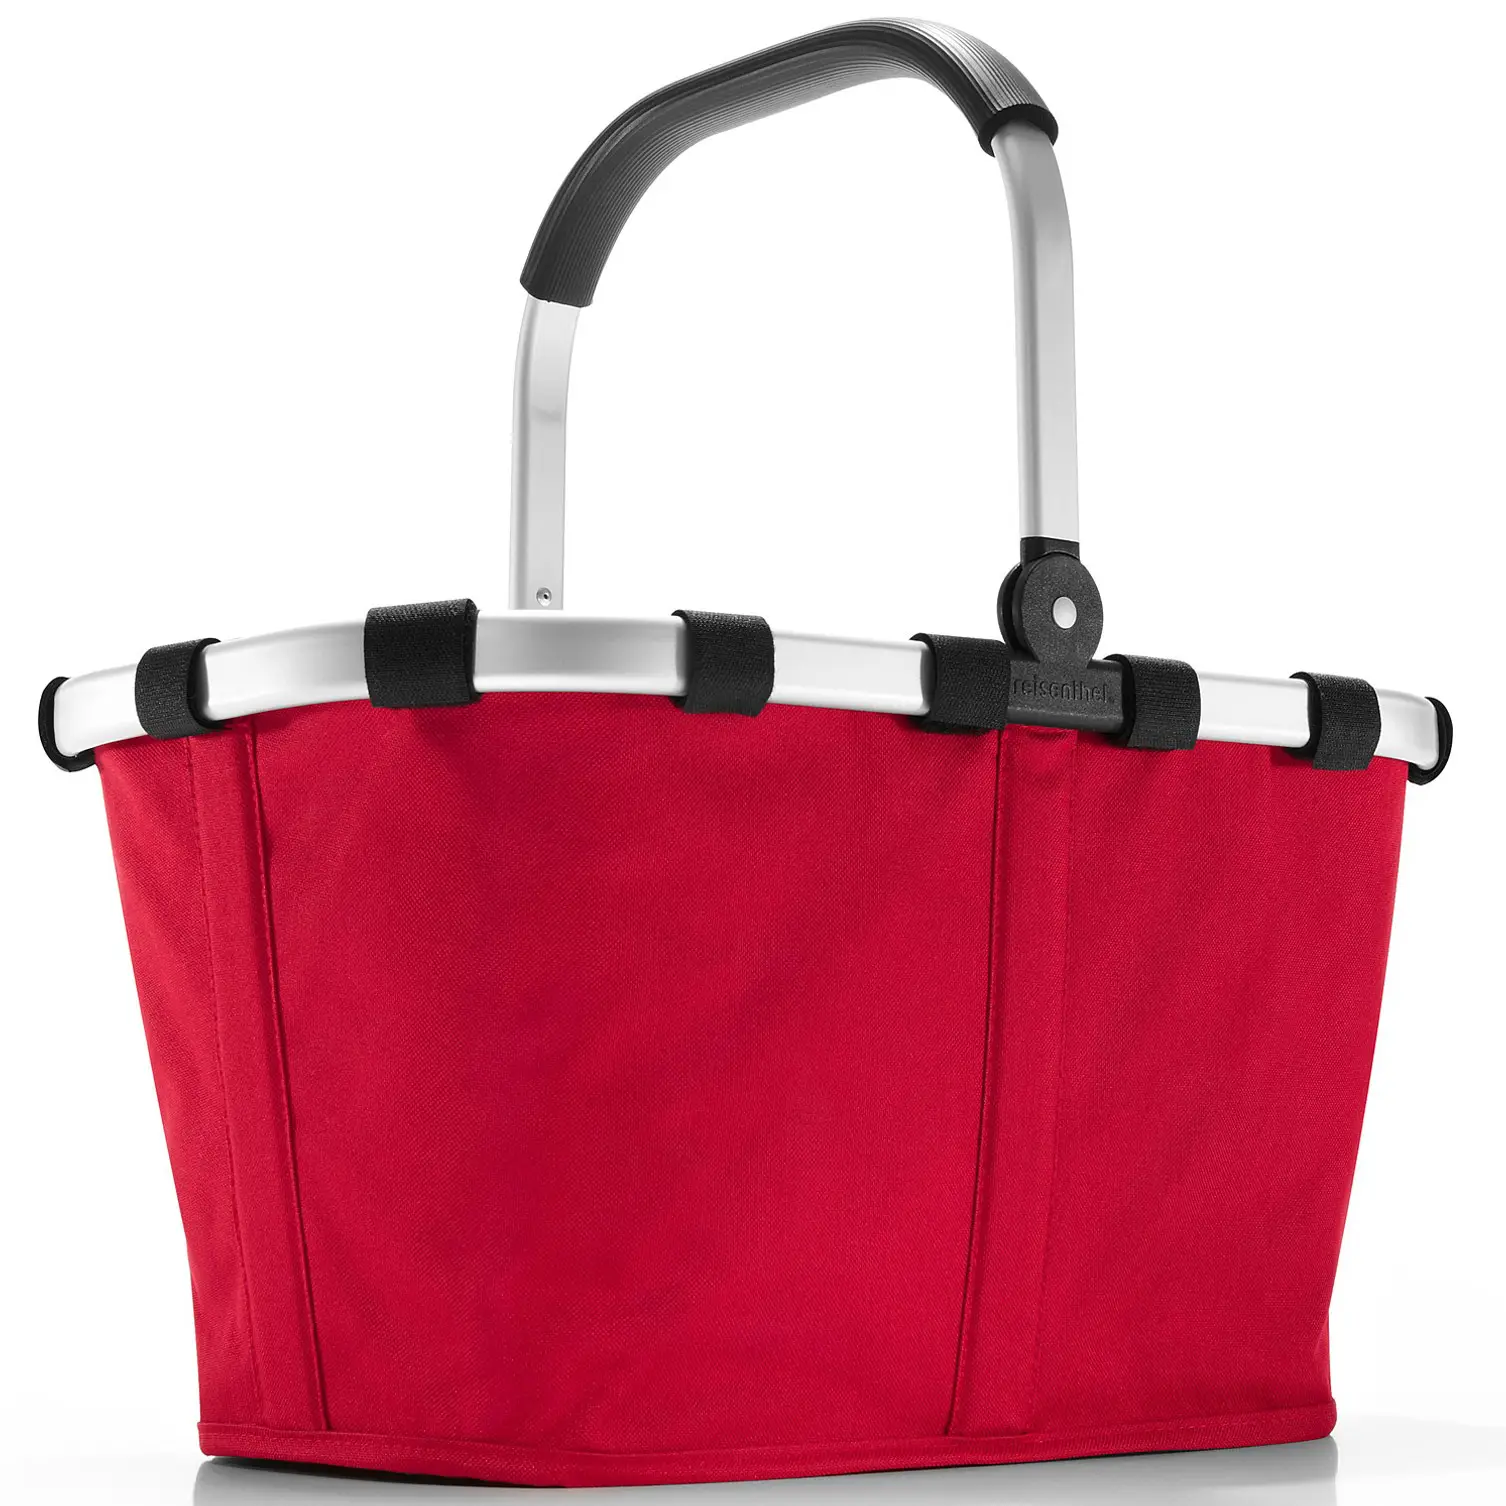 Einkaufskorb carrybag red